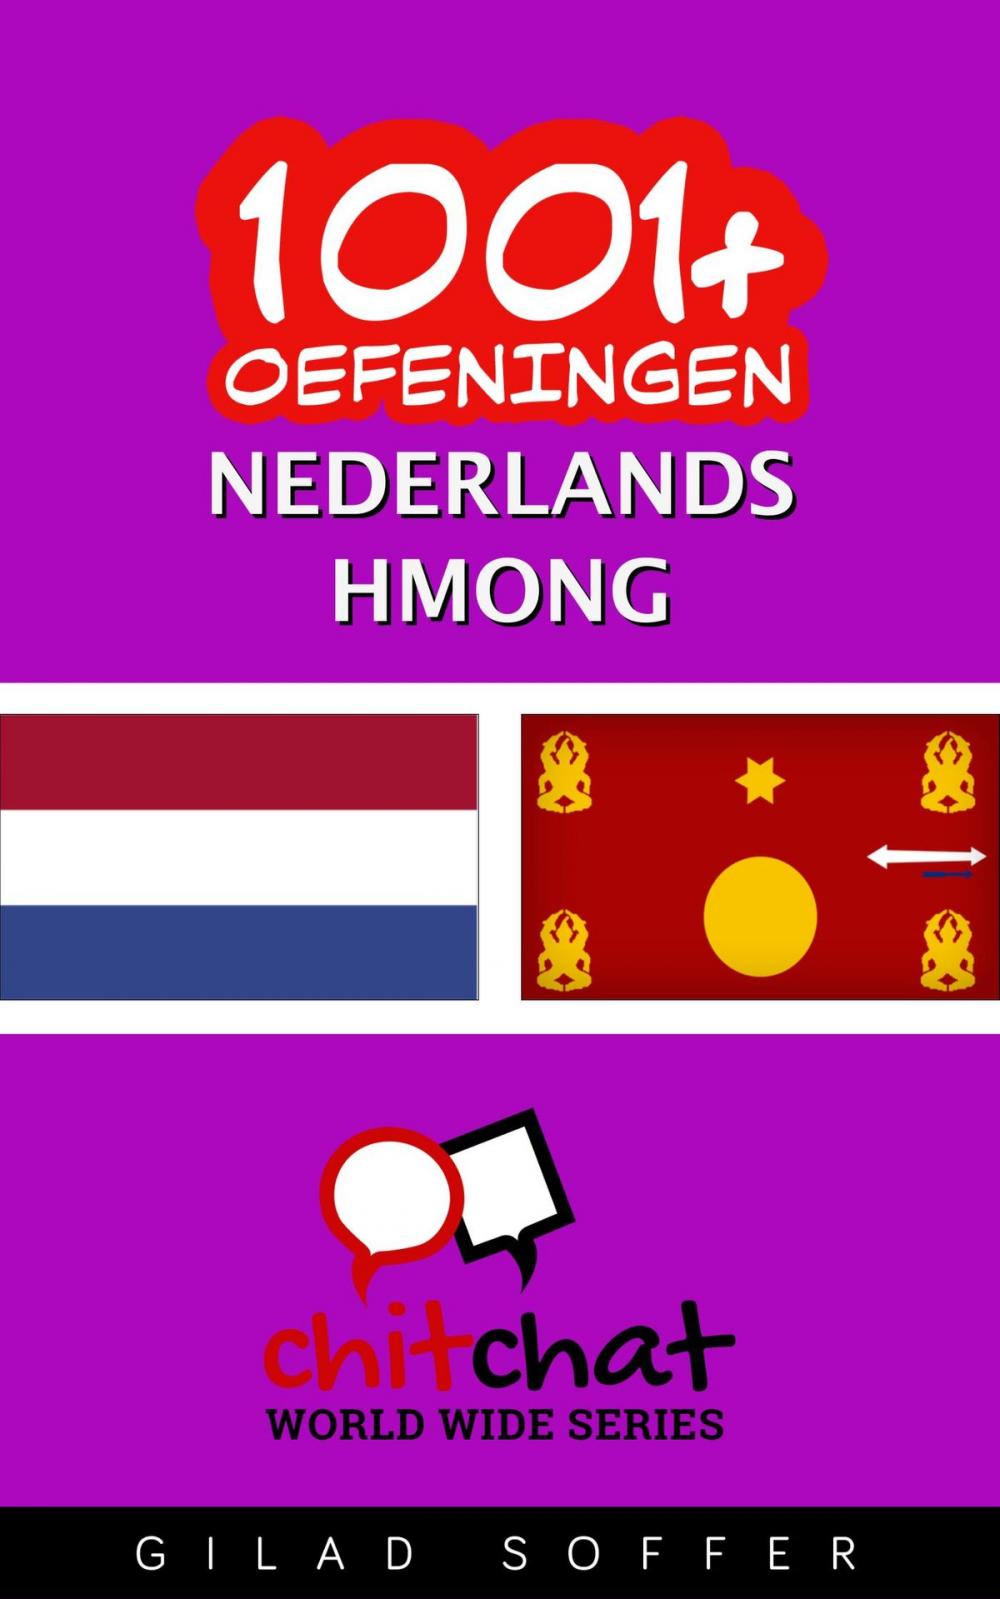 Big bigCover of 1001+ oefeningen nederlands - Hmong